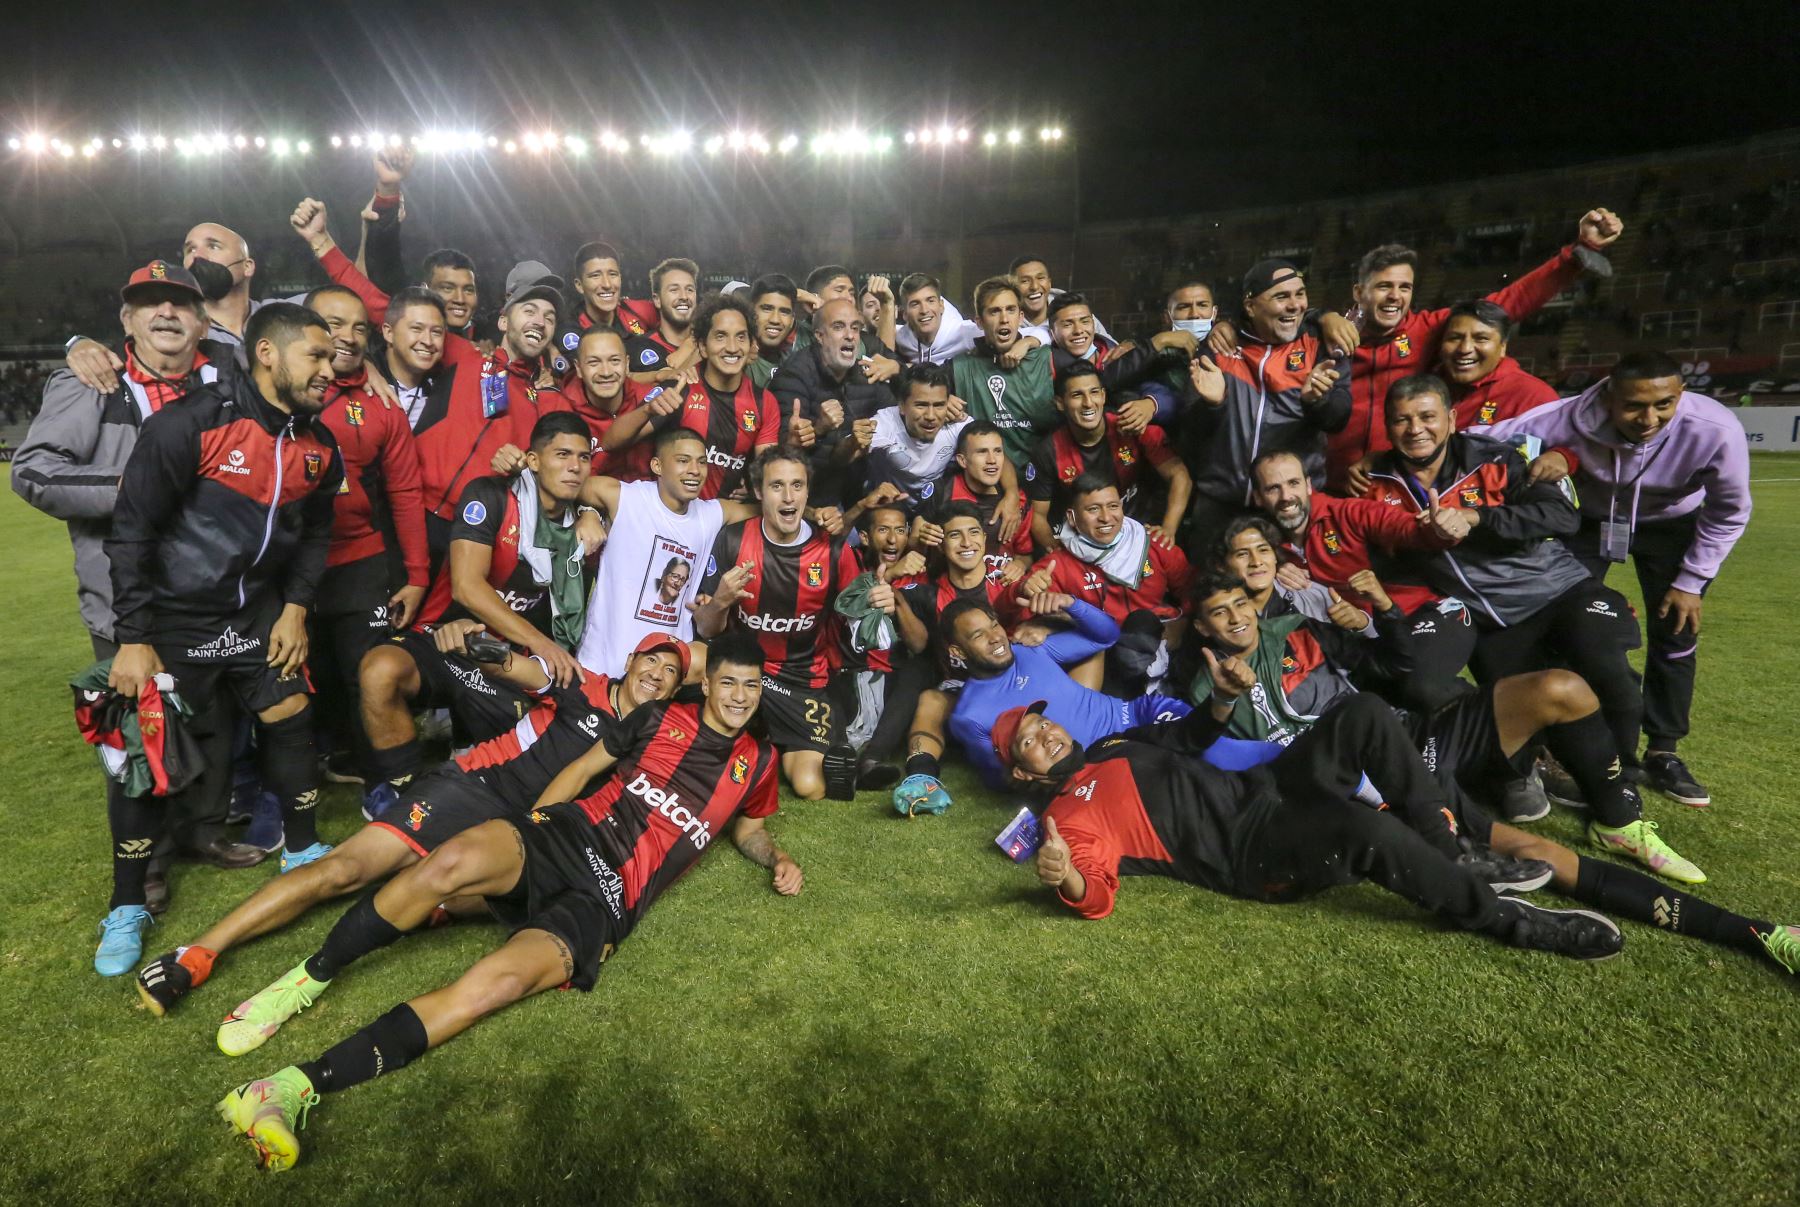 Los jugadores de Melgar de Perú celebran después de derrotar a Cuiabá de Brasil al final de su partido de fútbol de la fase de grupos de la Copa Sudamericana en el estadio Monumental de la UNSA en Arequipa, Perú, el 26 de mayo de 2022.
Foto: DeChalaca/ Fredy Salcedo